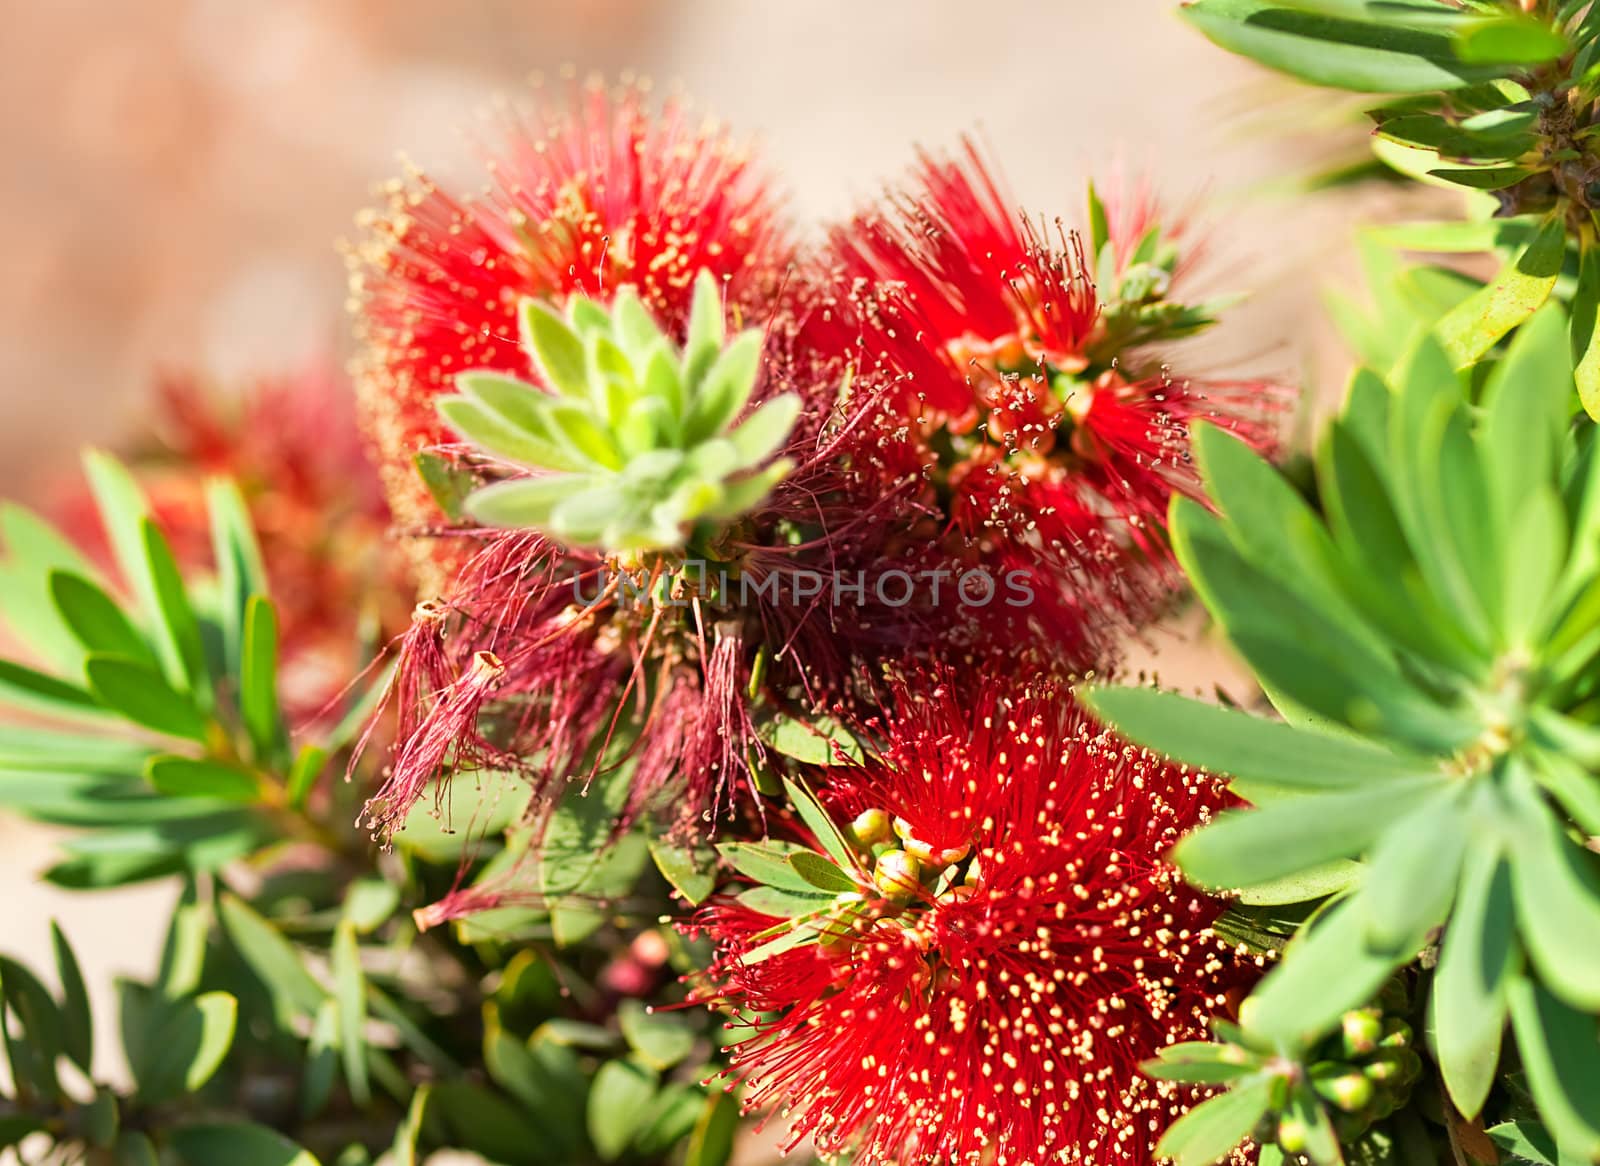 Red Australian Flower Callistemon Little John cultivar  by sherj